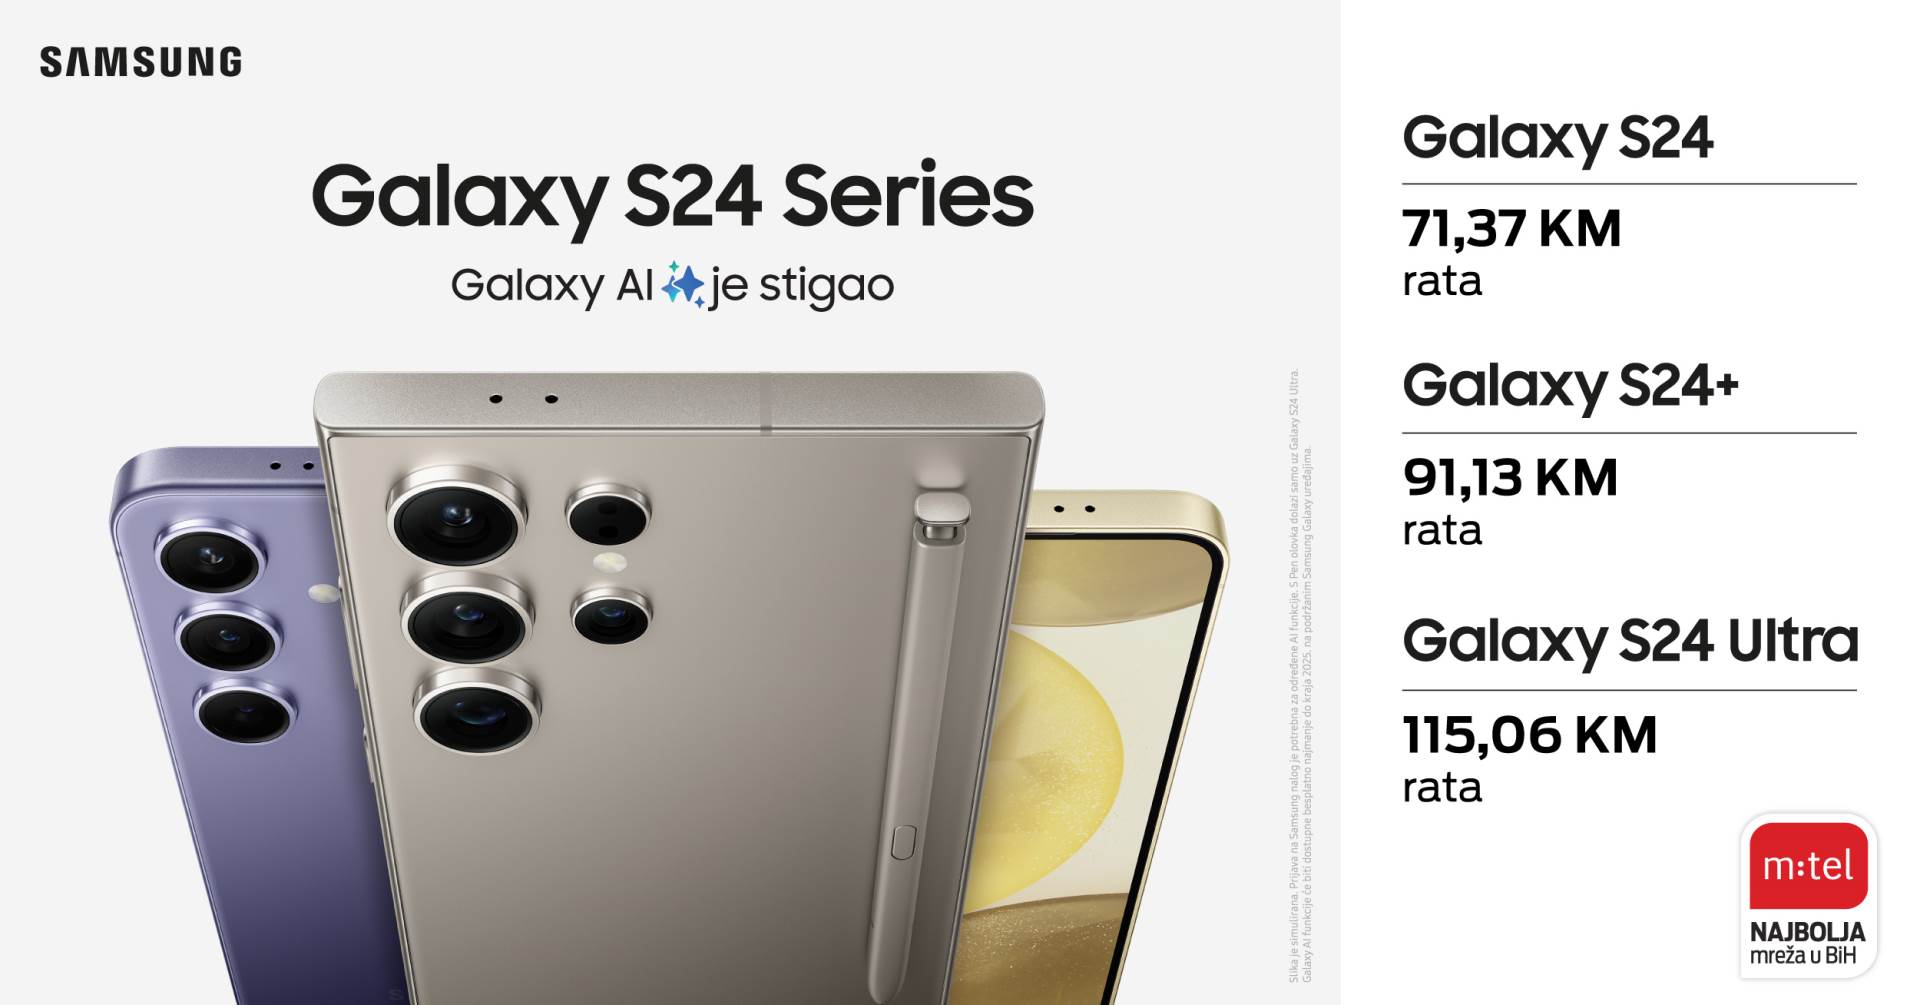  Samsung Galaxy S24 u m:tel ponudi 